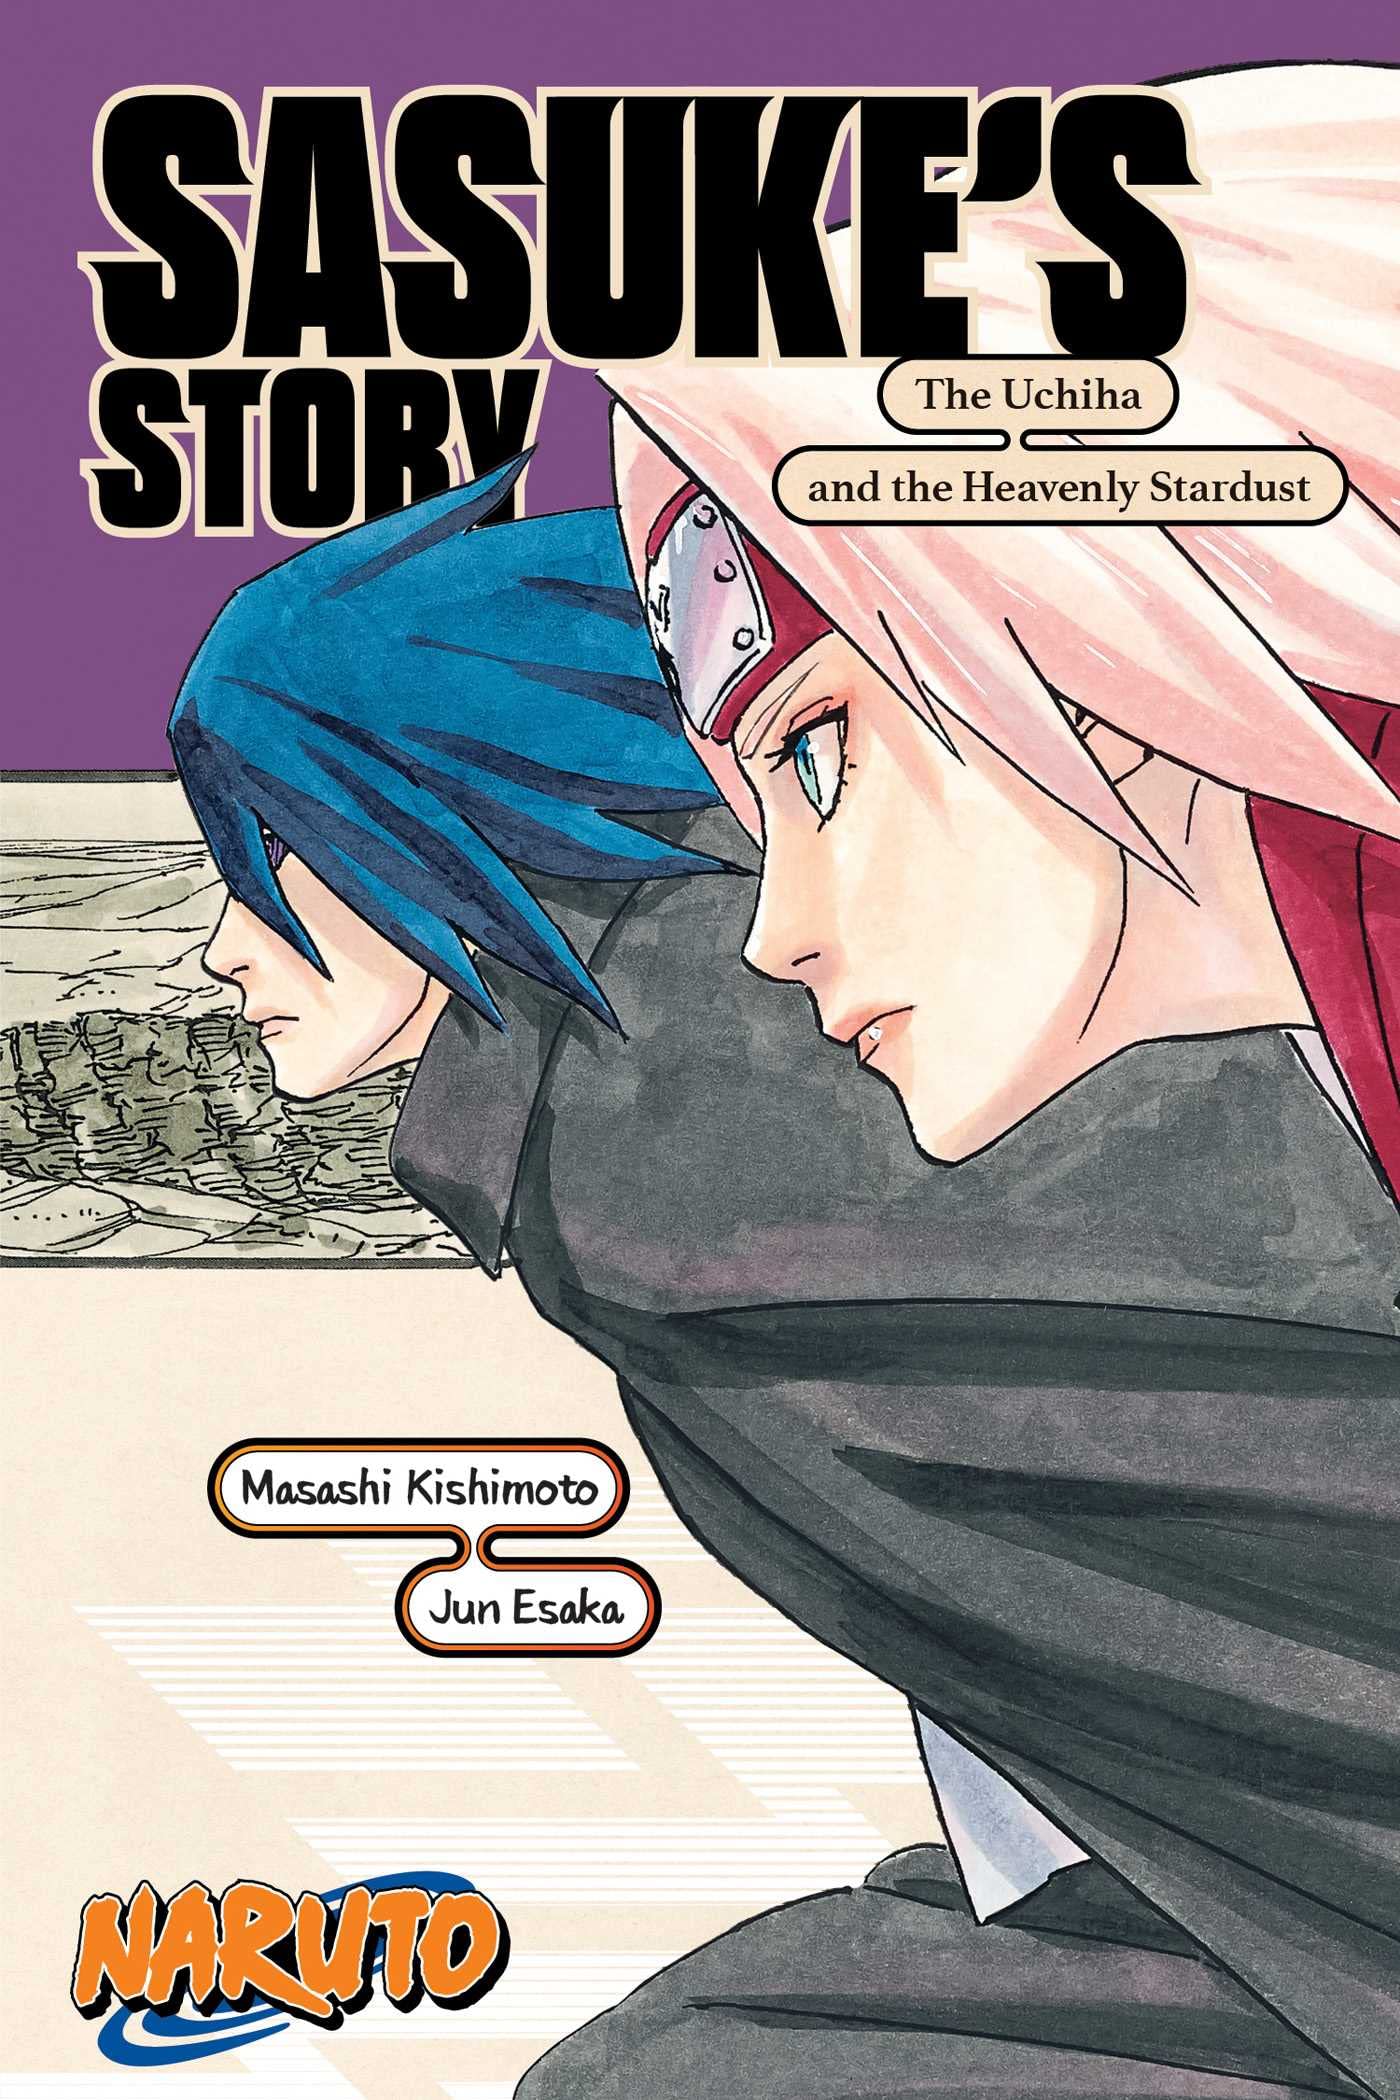 Naruto Sasuke Story Uchiha Heavenly Stardust Soft Cover